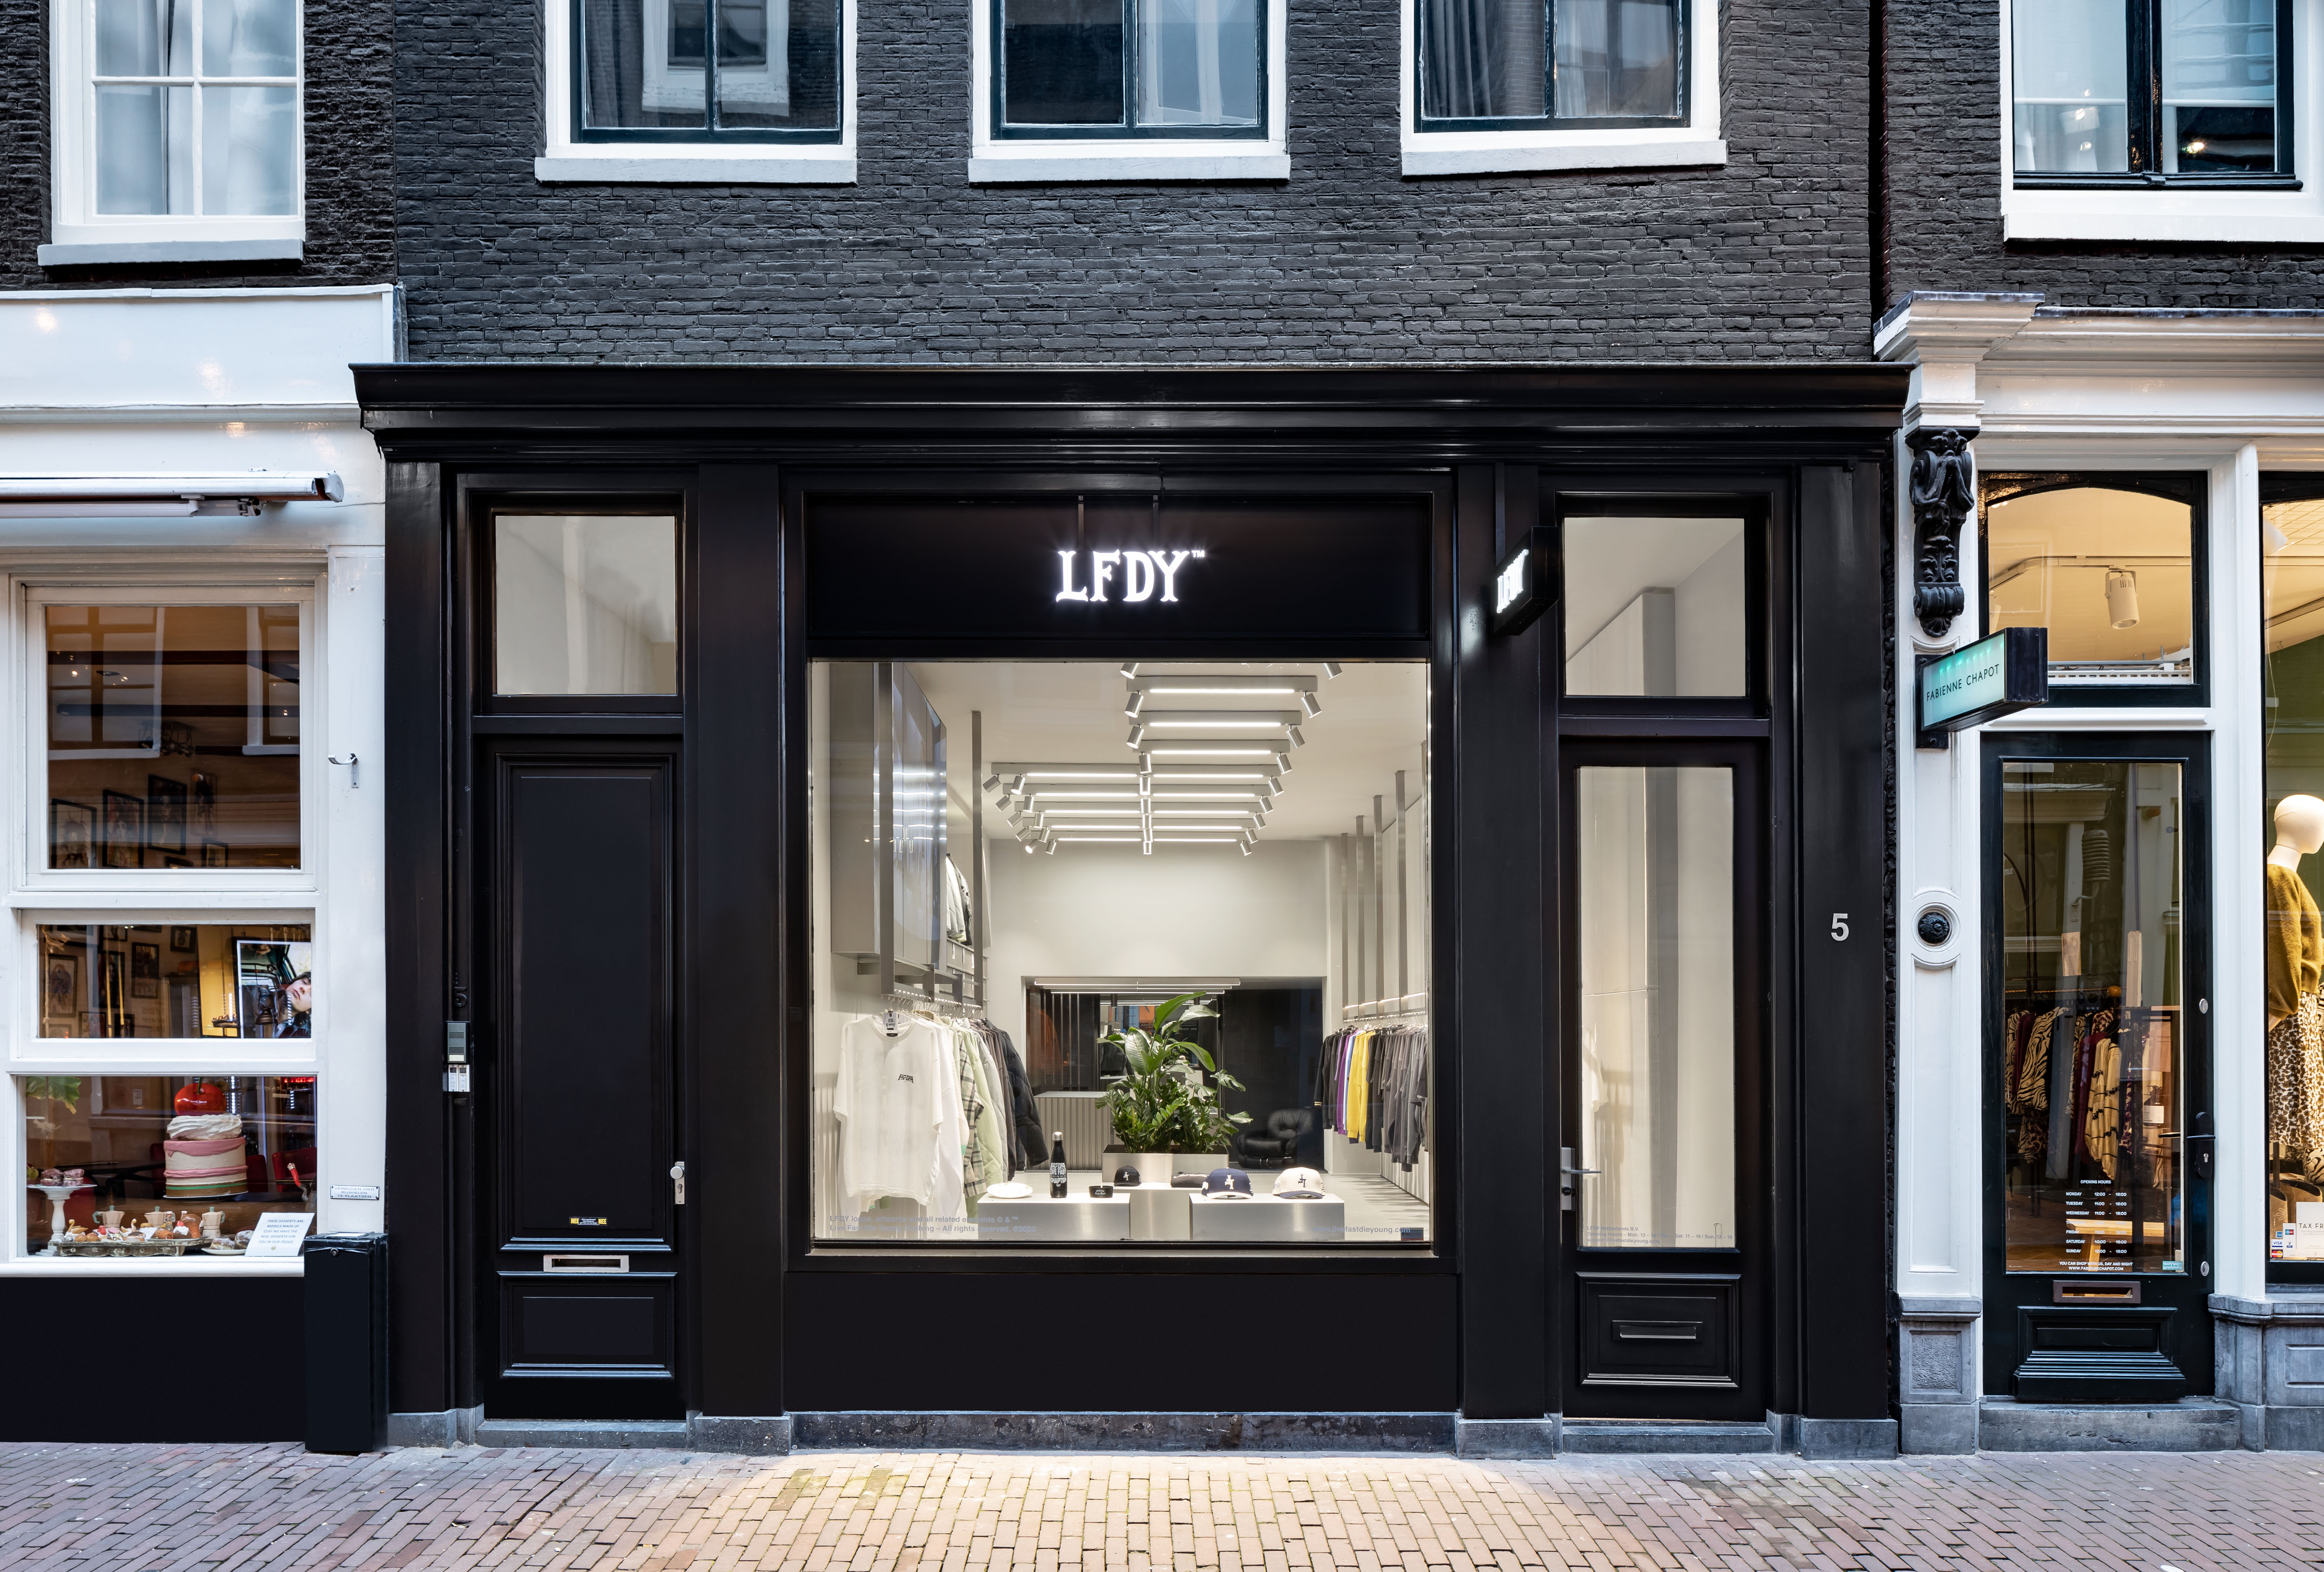 LFDY Amsterdam